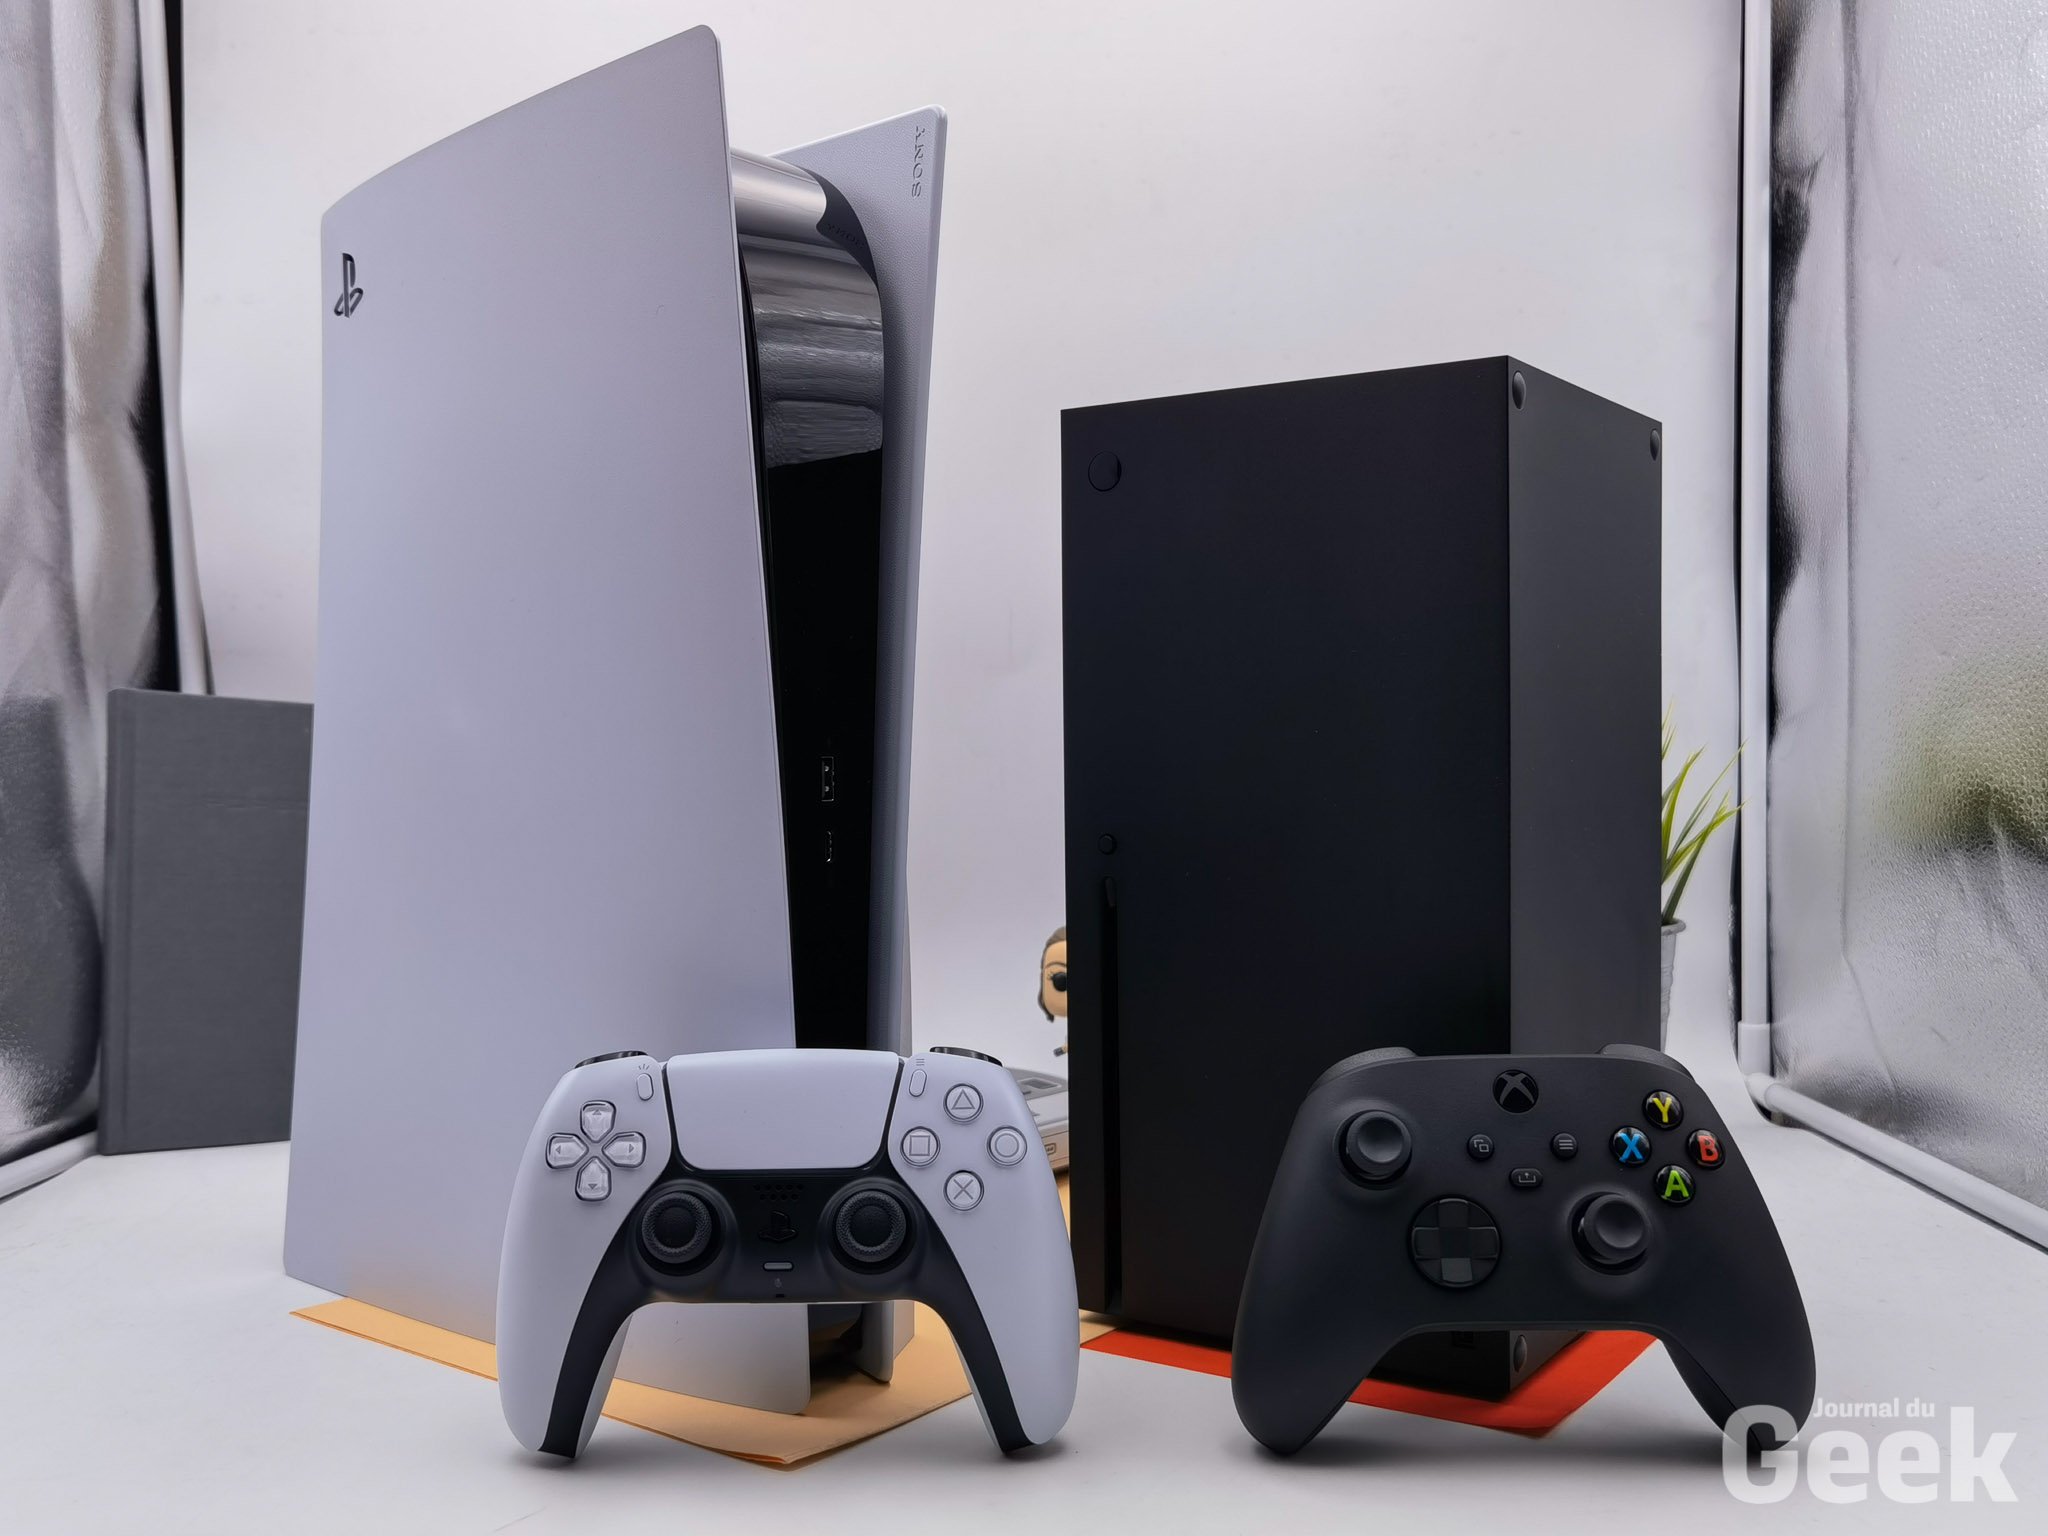 Comparer les consoles Xbox Series X et Xbox Series S